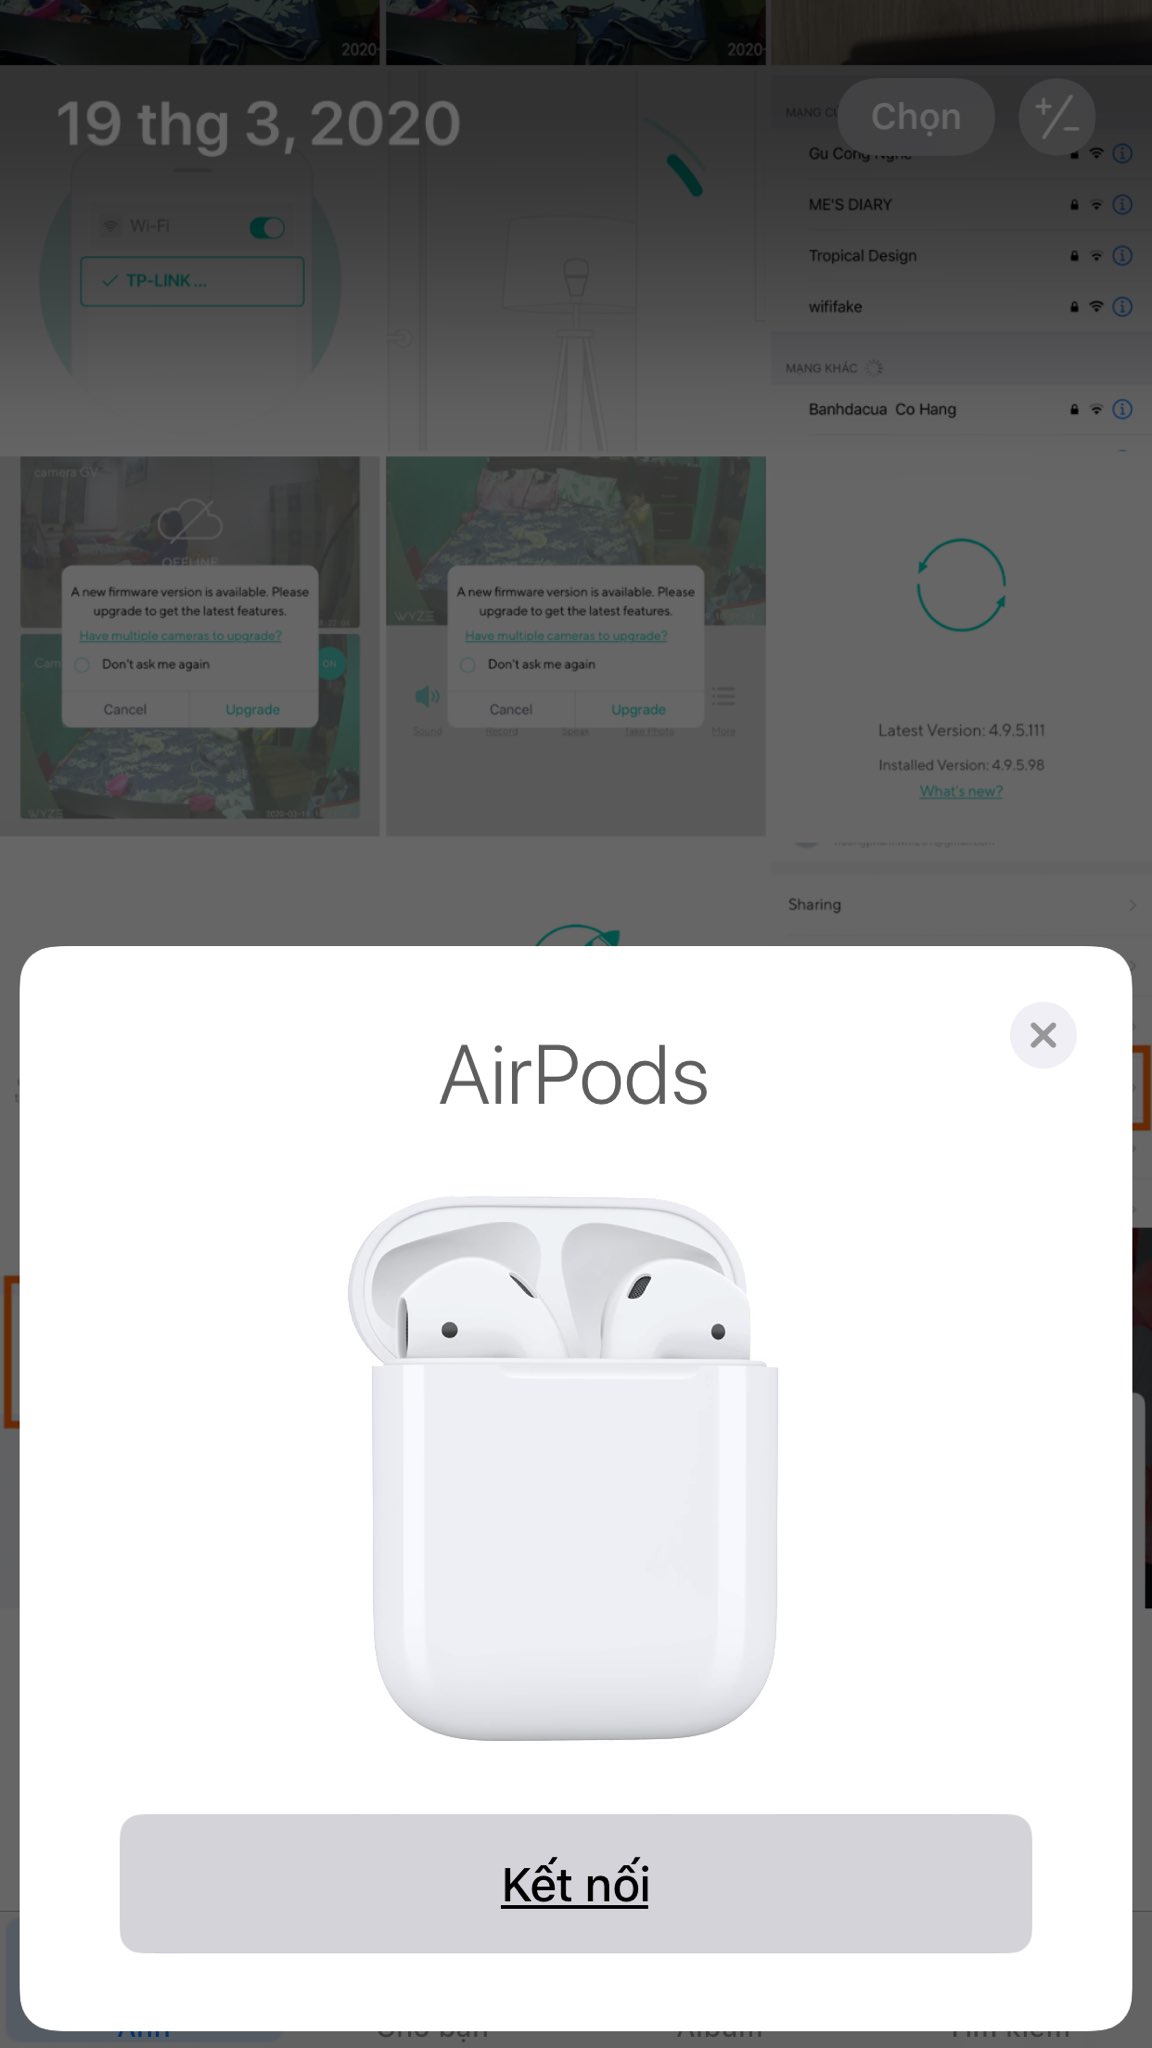 Hướng dẫn kết nối và sử dụng tai nghe Apple AirPods